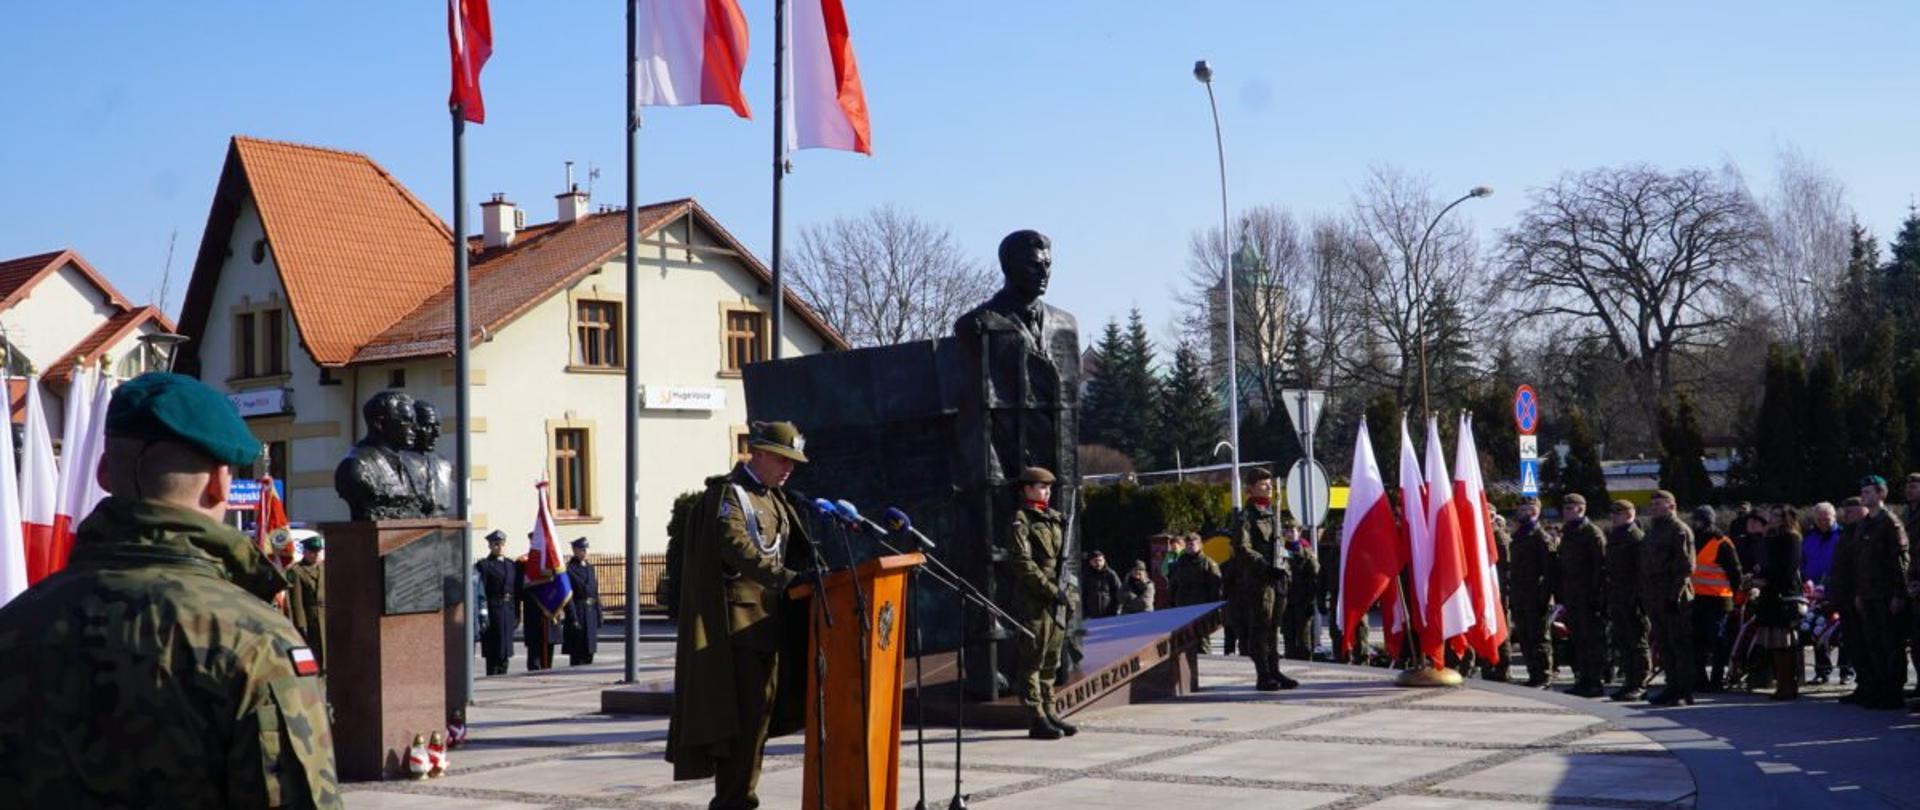 Uroczystość odbywająca się pod pomnikiem Żołnierzy Wyklętych w Rzeszowie